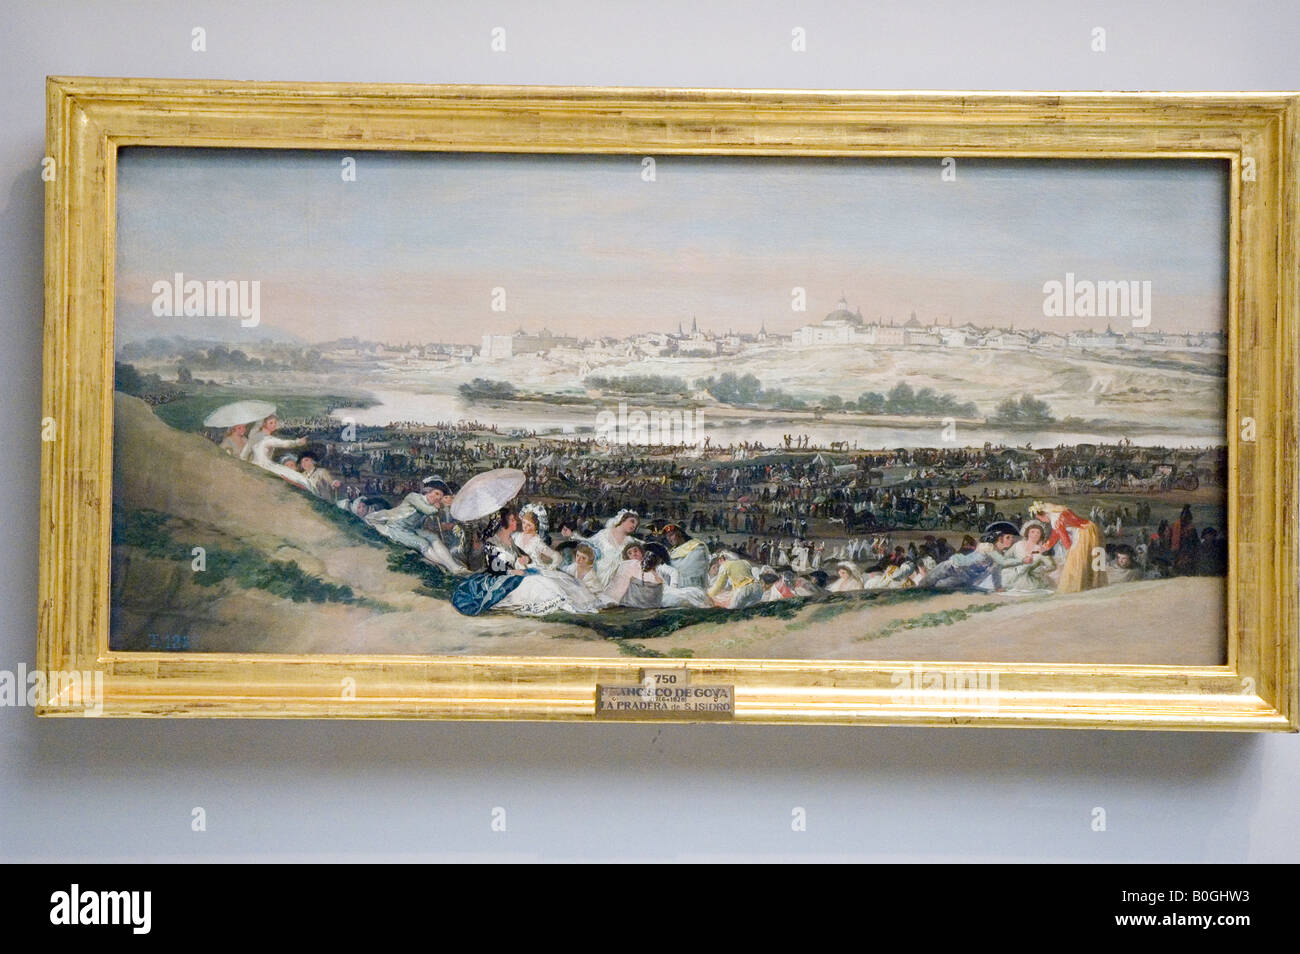 La pradera de San Isidro or San Isidro meadow 1787 Painting by Francisco de GOYA y Lucientes PRADO MUSEUM Madrid Stock Photo